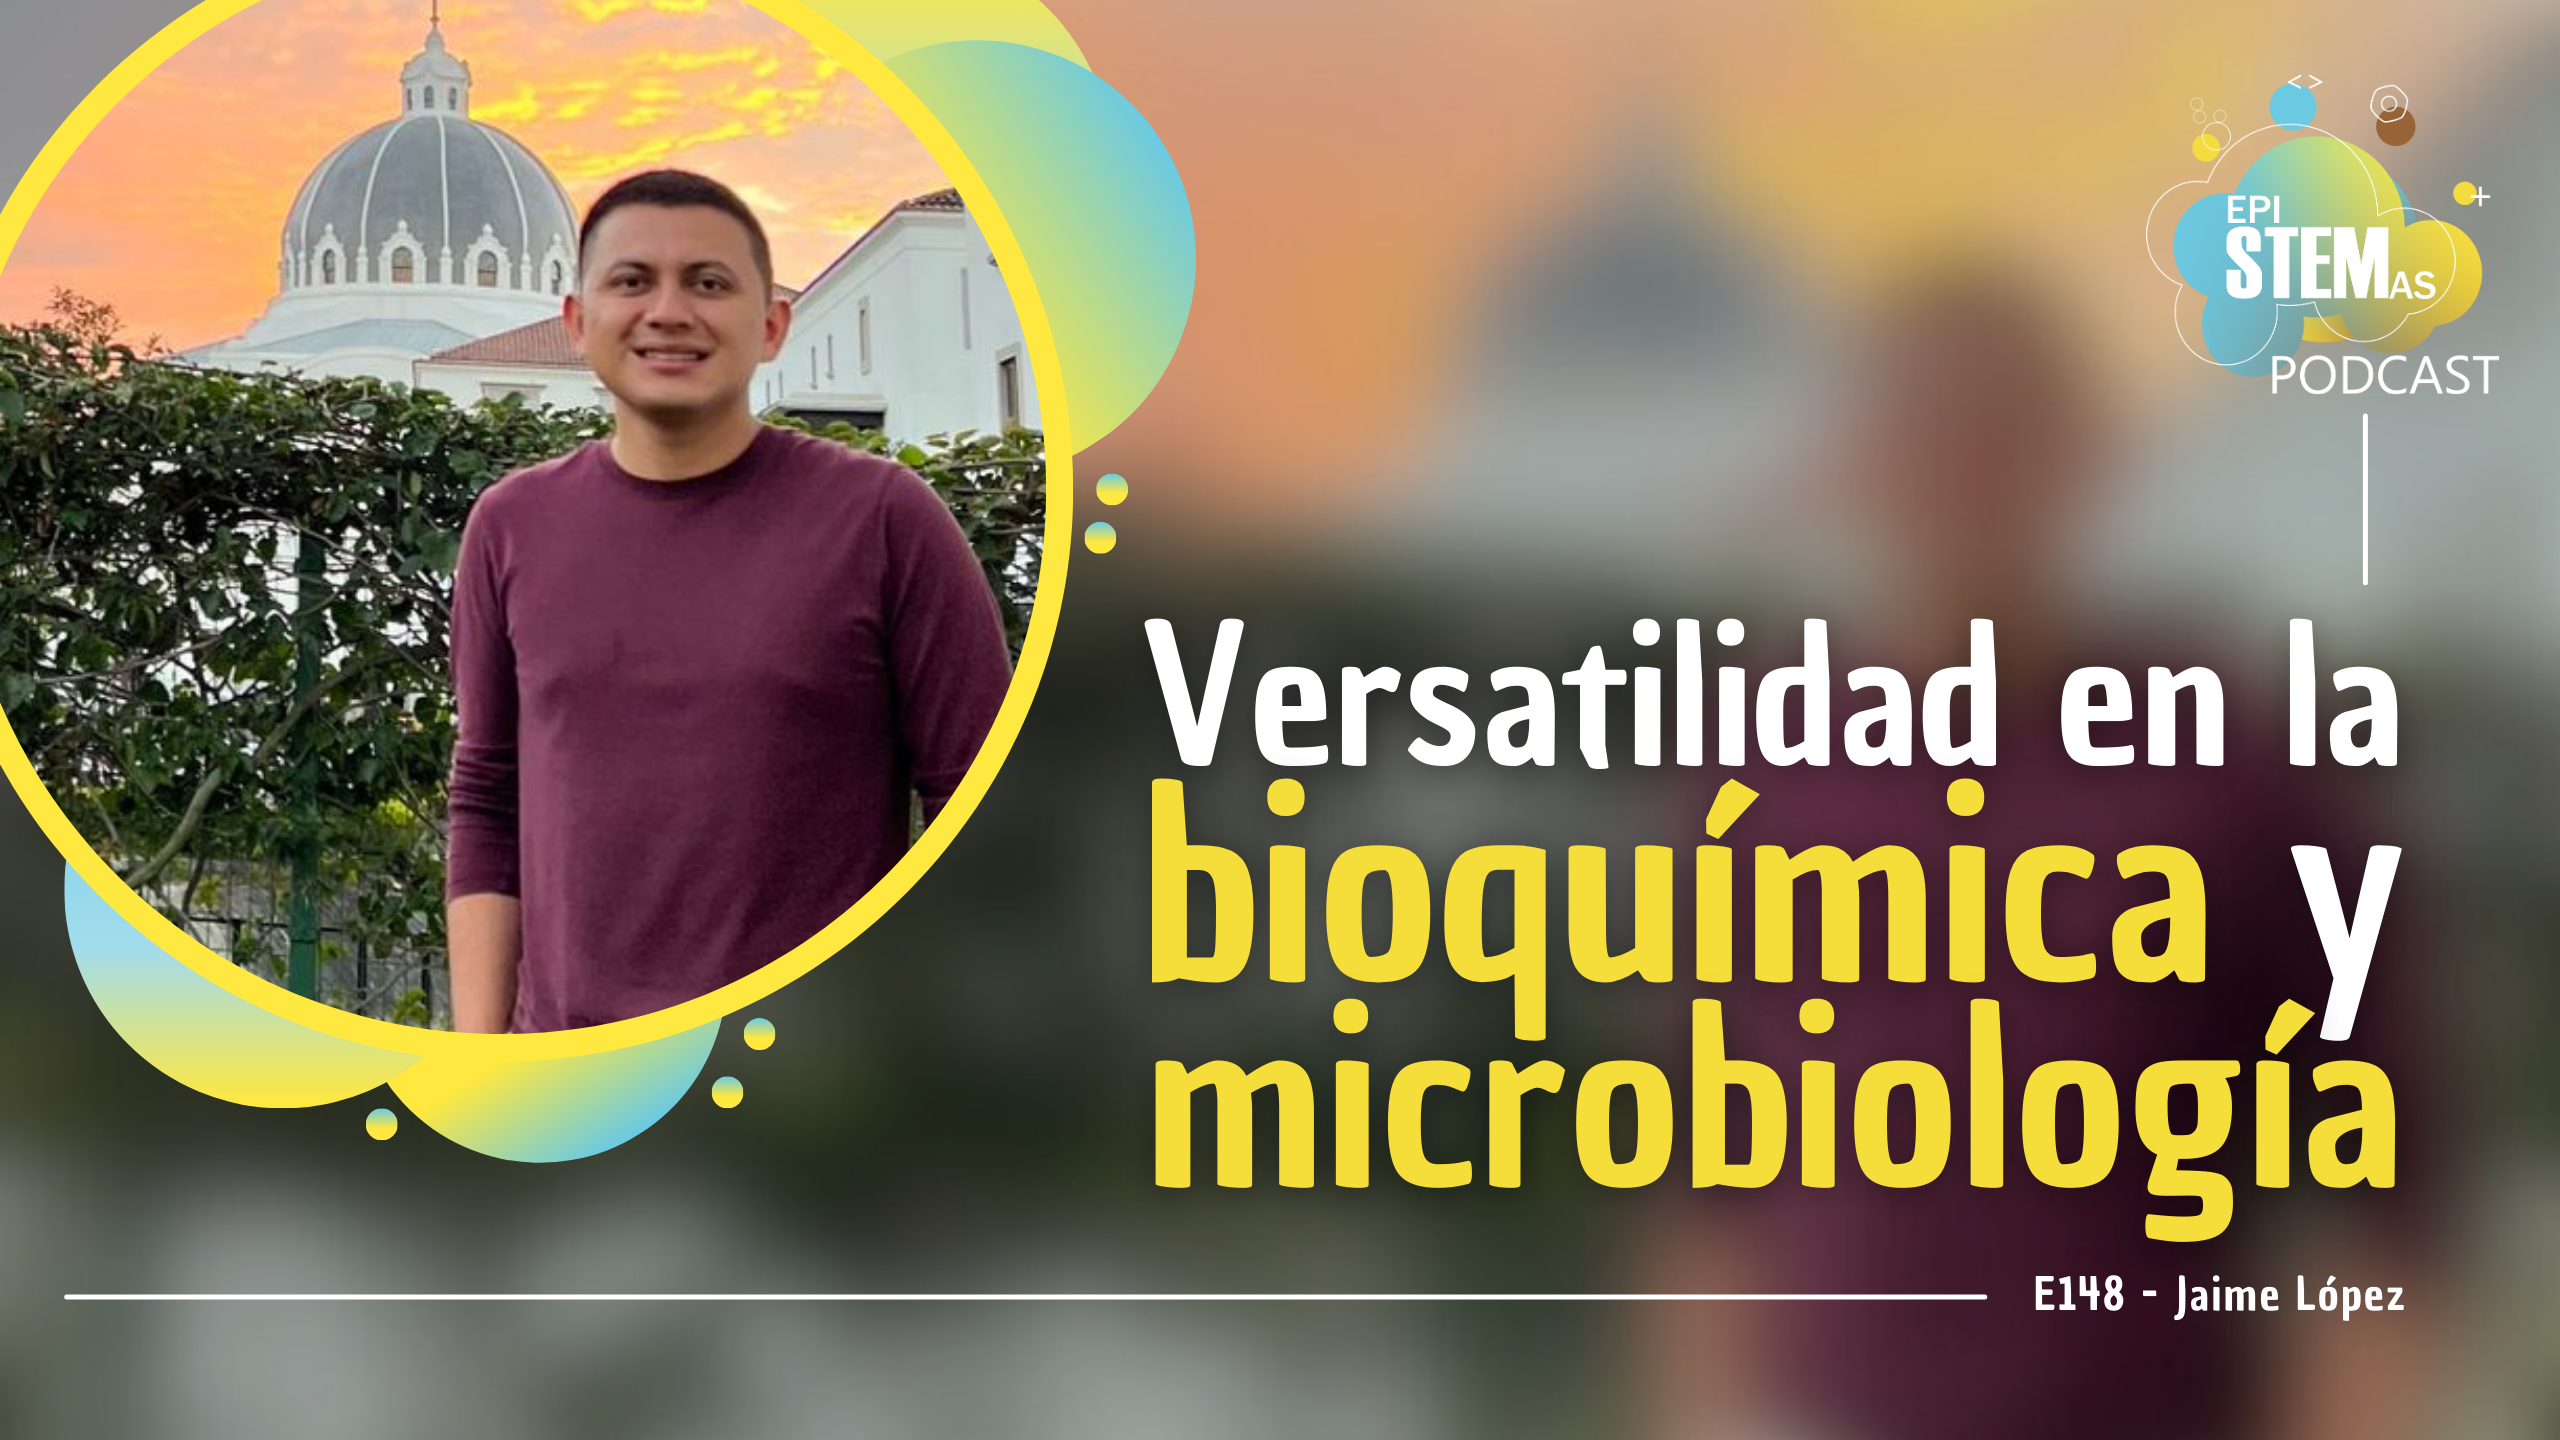 Versatilidad en la bioquímica y microbiología